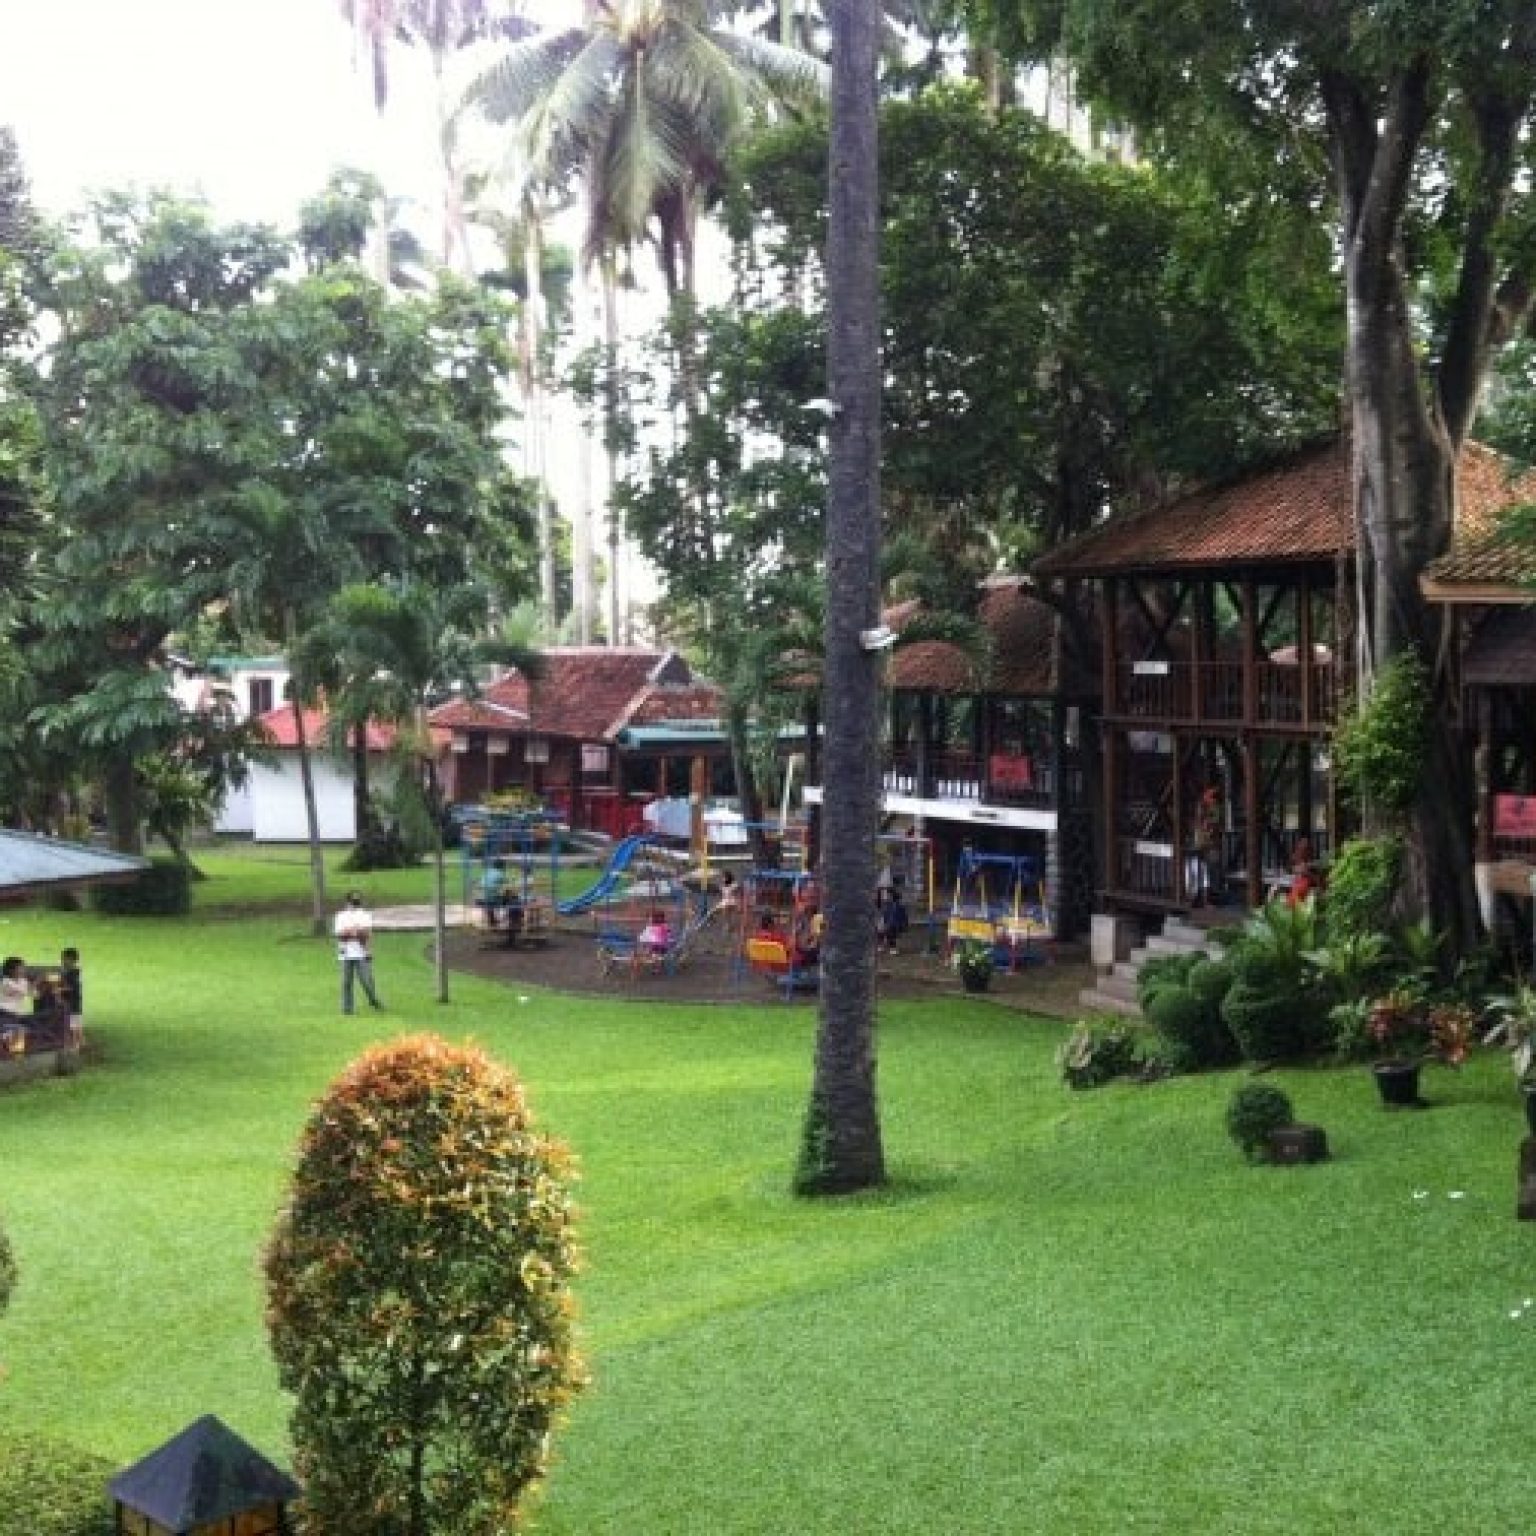 Mengenal Wisata Situ Gintung Tangerang Selatan, Cek Disini!